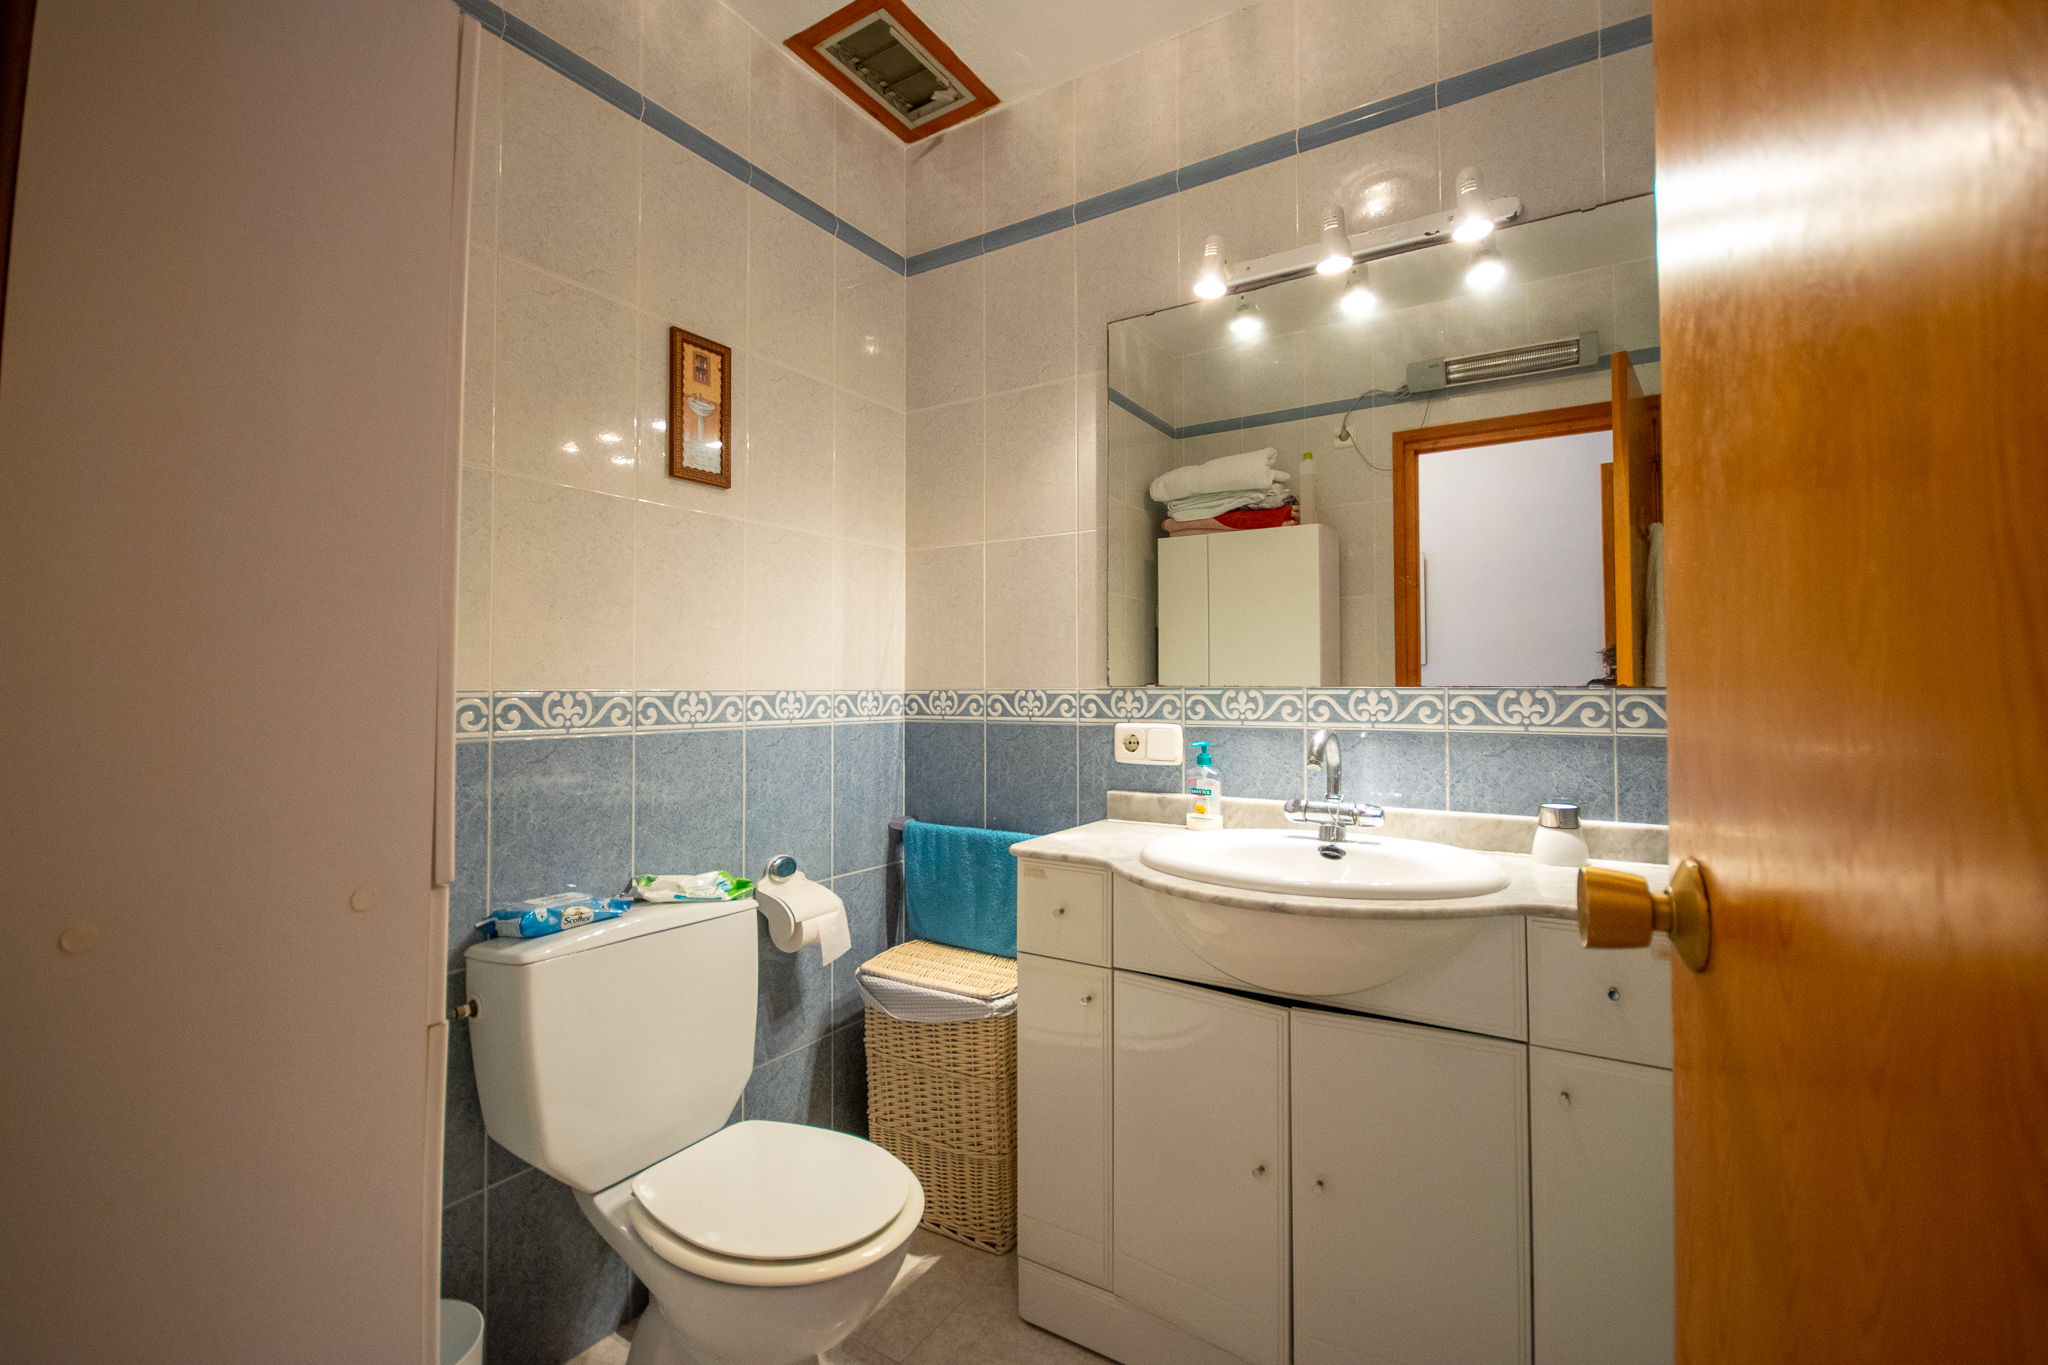 Salle de bain avec baignoire de l'appartement mitoyen à Son Bou